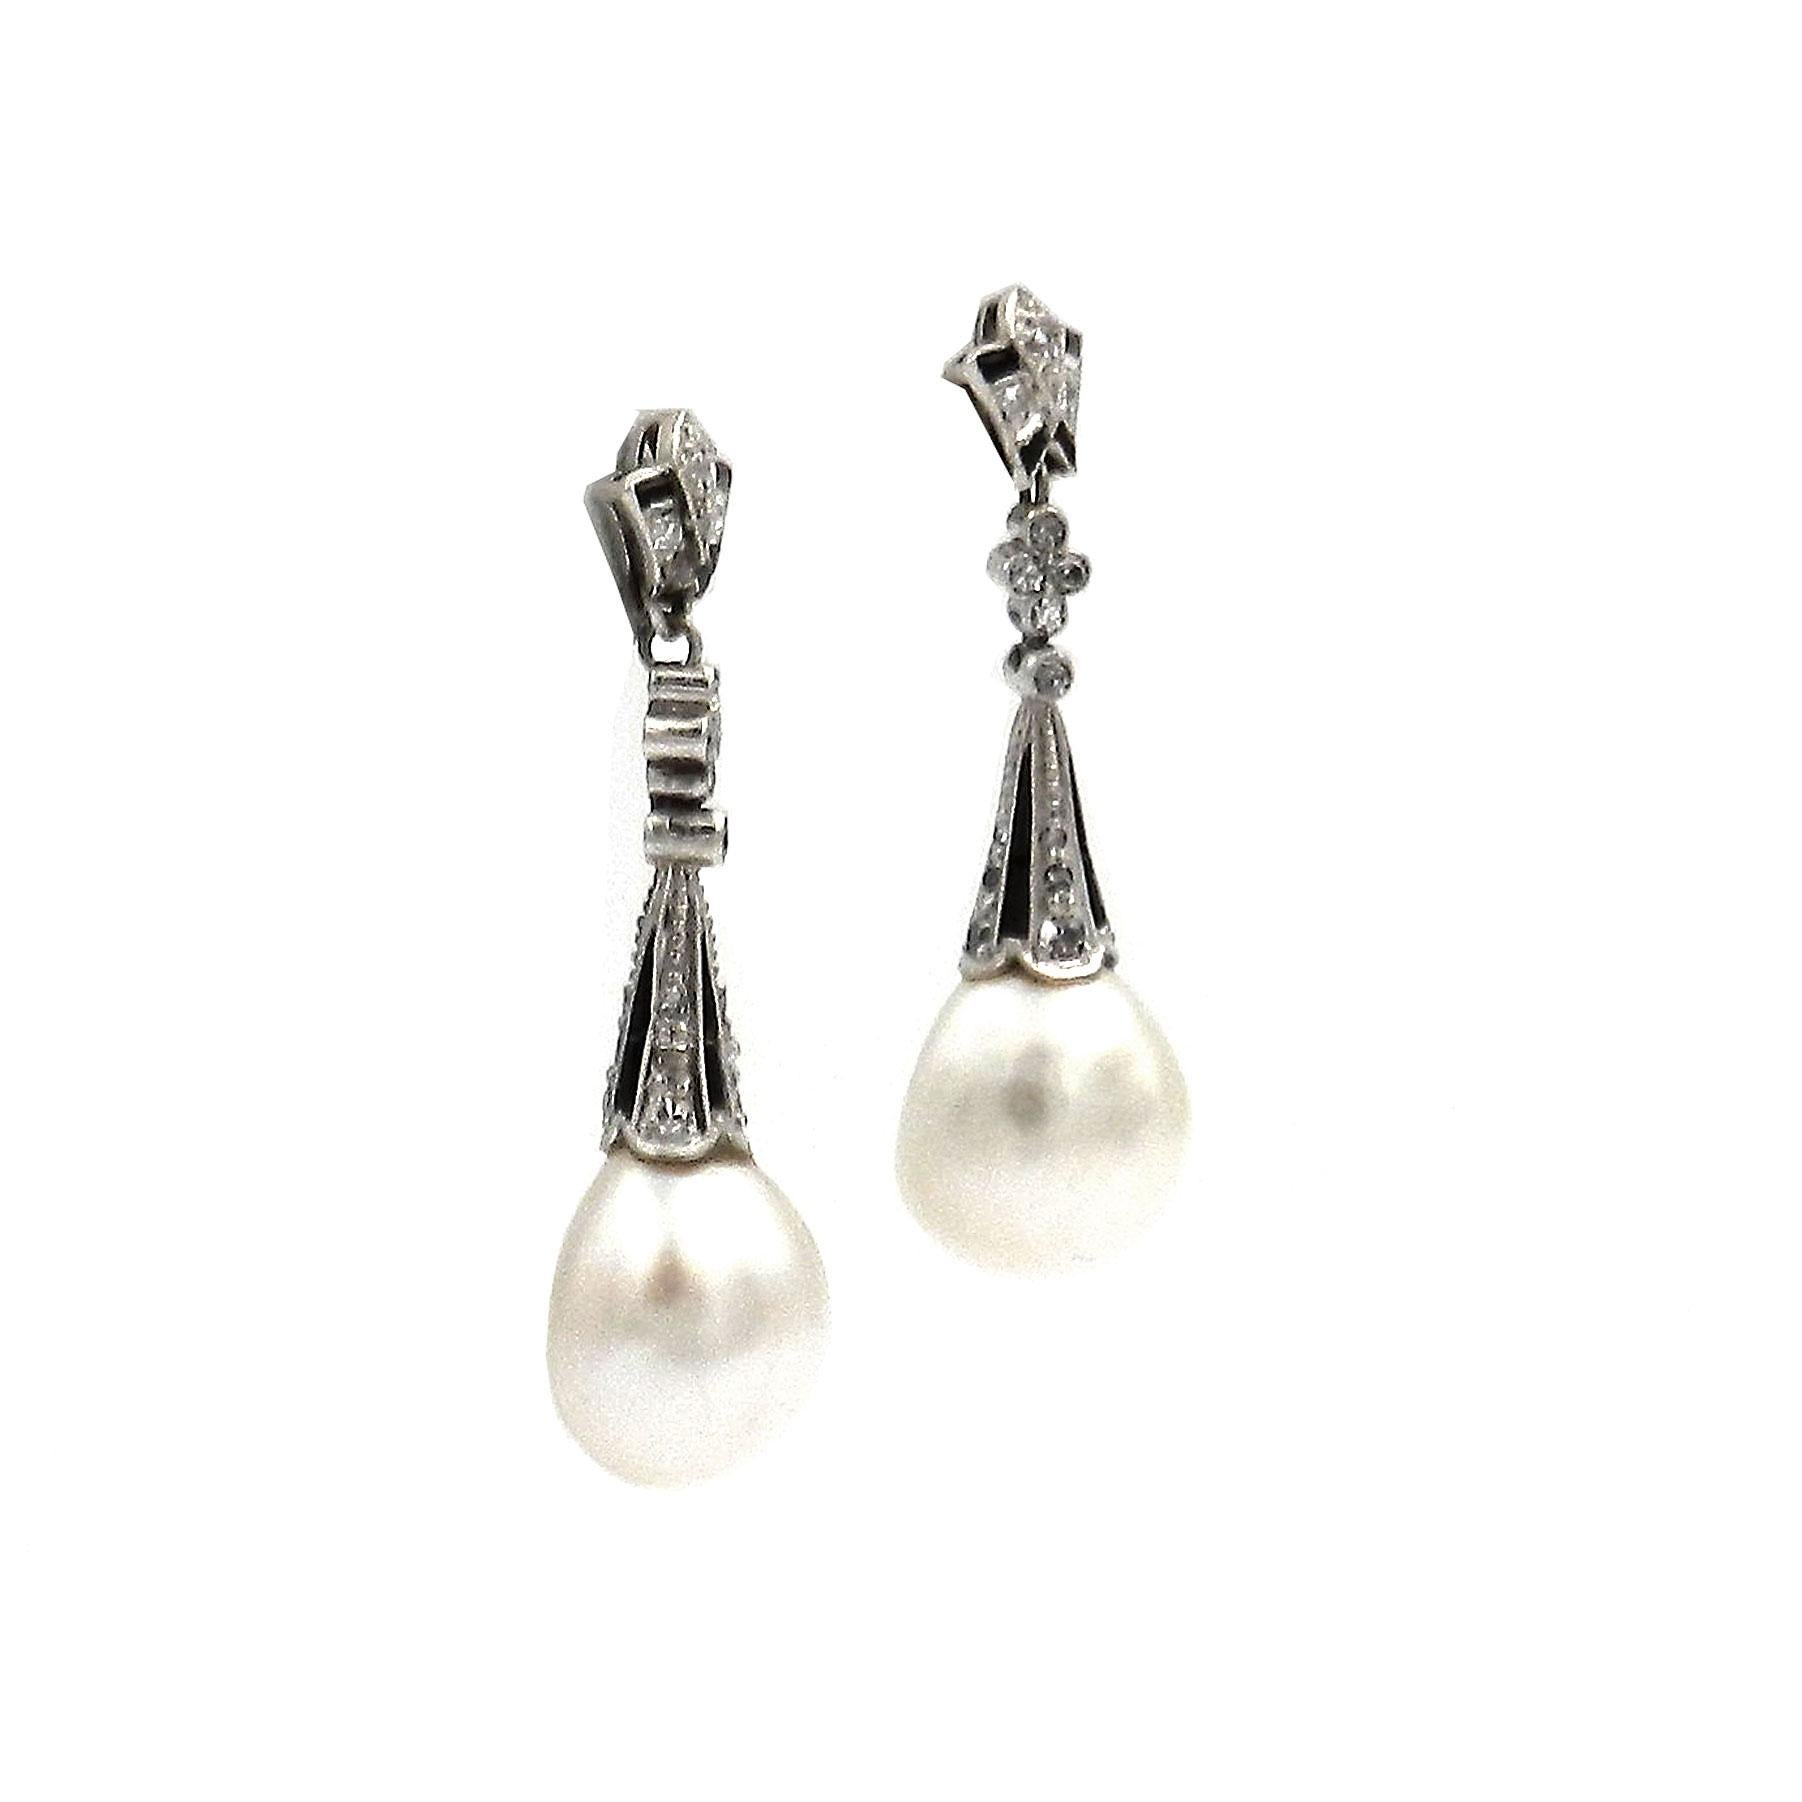 ART PEARLS Perle naturelle Onyx Diamant Or blanc 18K, circa 1920

Elégantes boucles d'oreilles Art Deco, chacune avec une perle naturelle en forme de larme dans un attaché serti de triangles d'onyx et de diamants rayonnants, monté de façon mobile